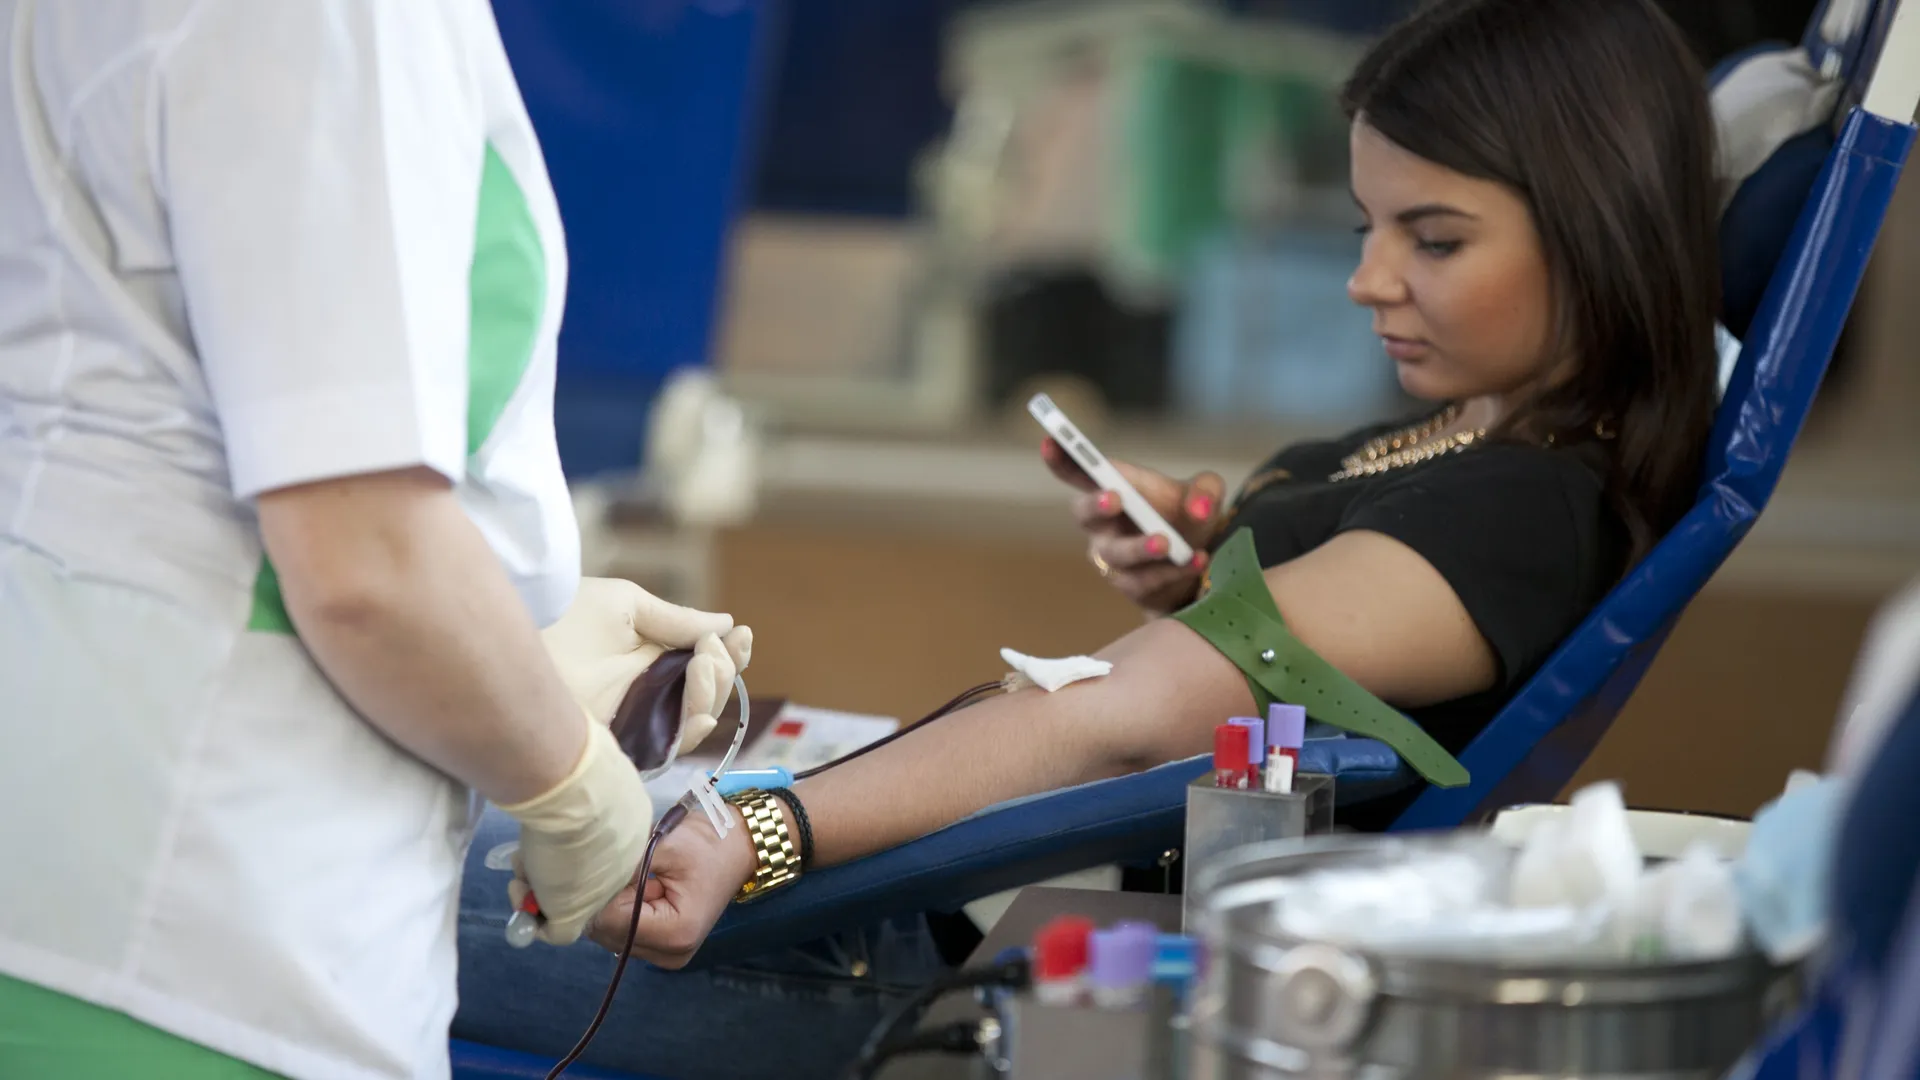 В мае центр крови Подмосковья проведет выездные донорские акции по городам